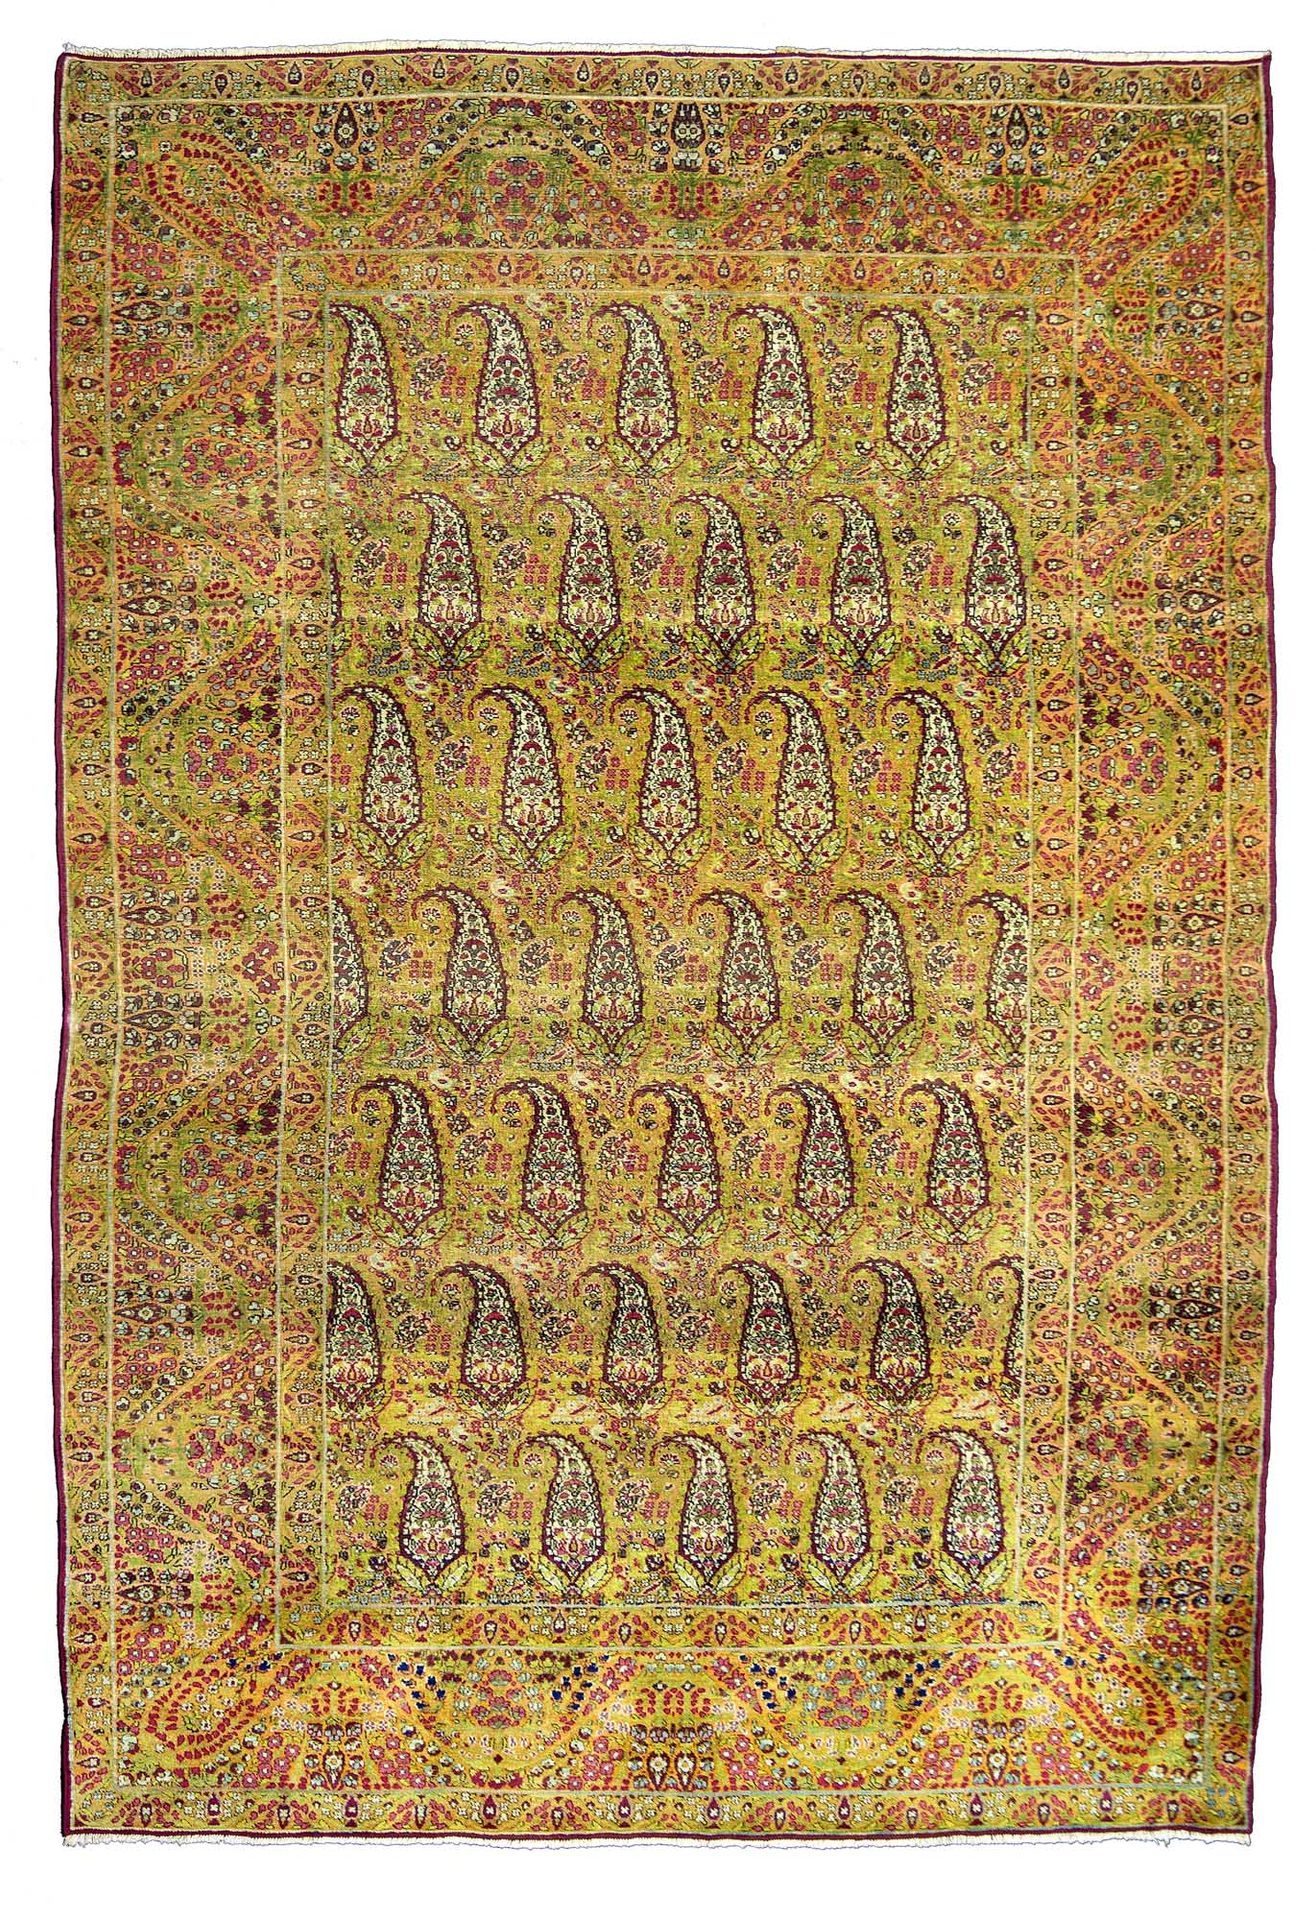 Null 优雅的KIRMAN-LAVER地毯（波斯），19世纪末

尺寸：203 x 132厘米

技术特点 : 羊毛天鹅绒，棉质底板。

一张完全是旧金黄色的&hellip;